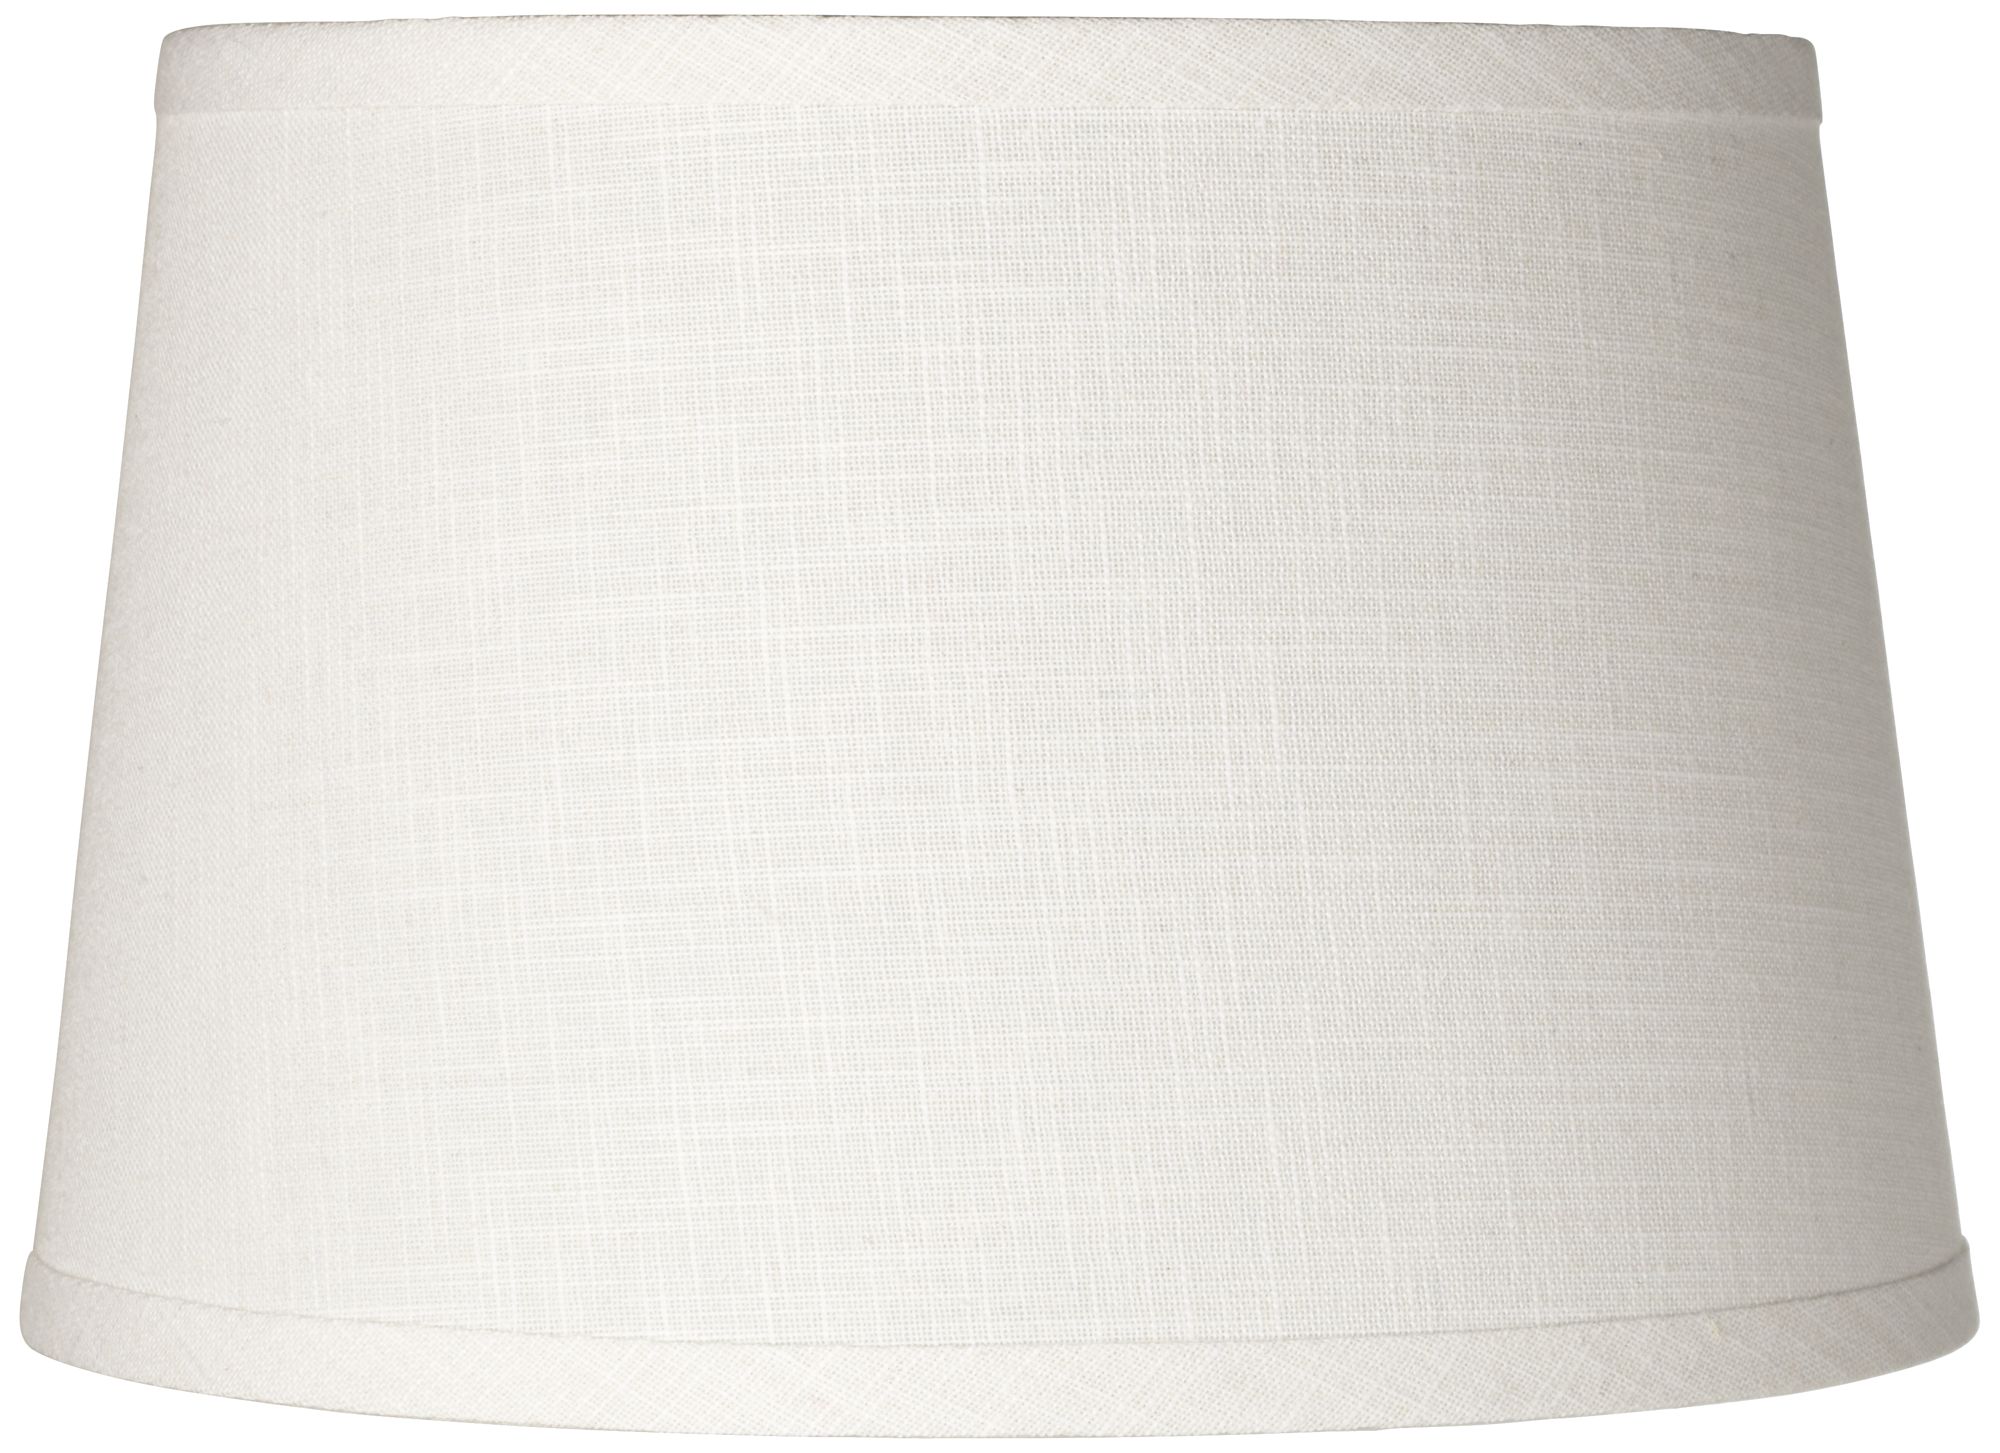 White Linen Drum Lamp Shade 10x12x8 